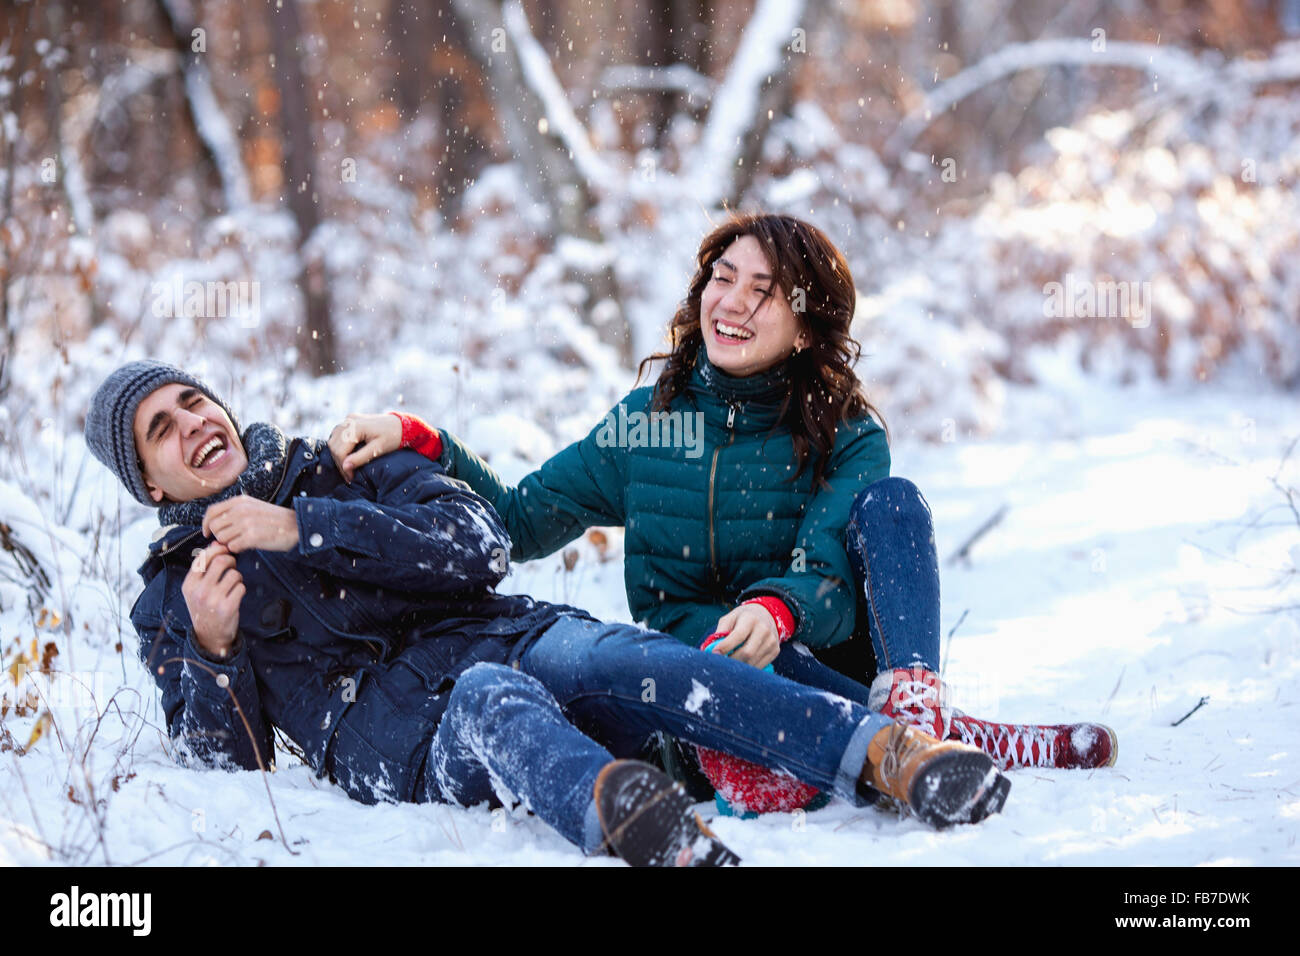 Toute la longueur de playful young couple sitting on snow Banque D'Images